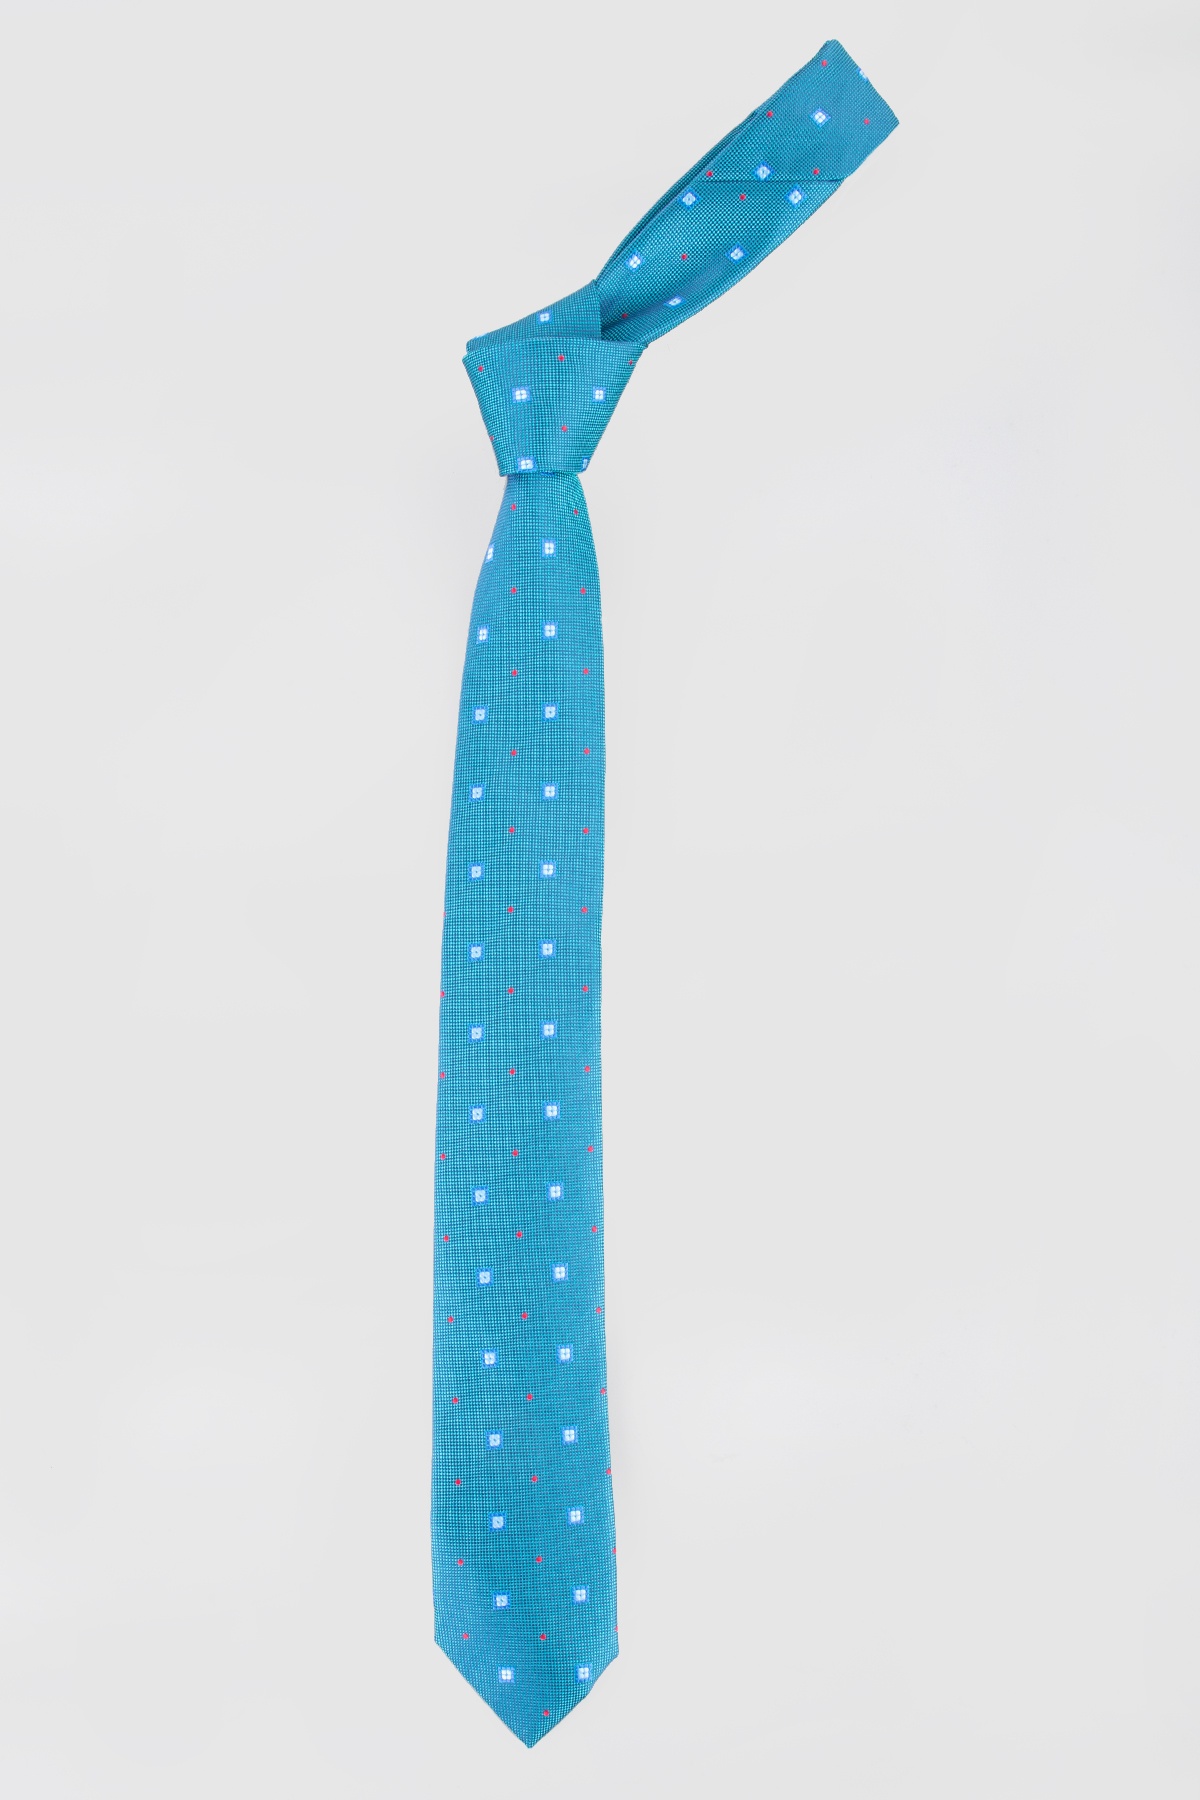 Türkizkék színű kis kocka mintás vékony nyakkendő